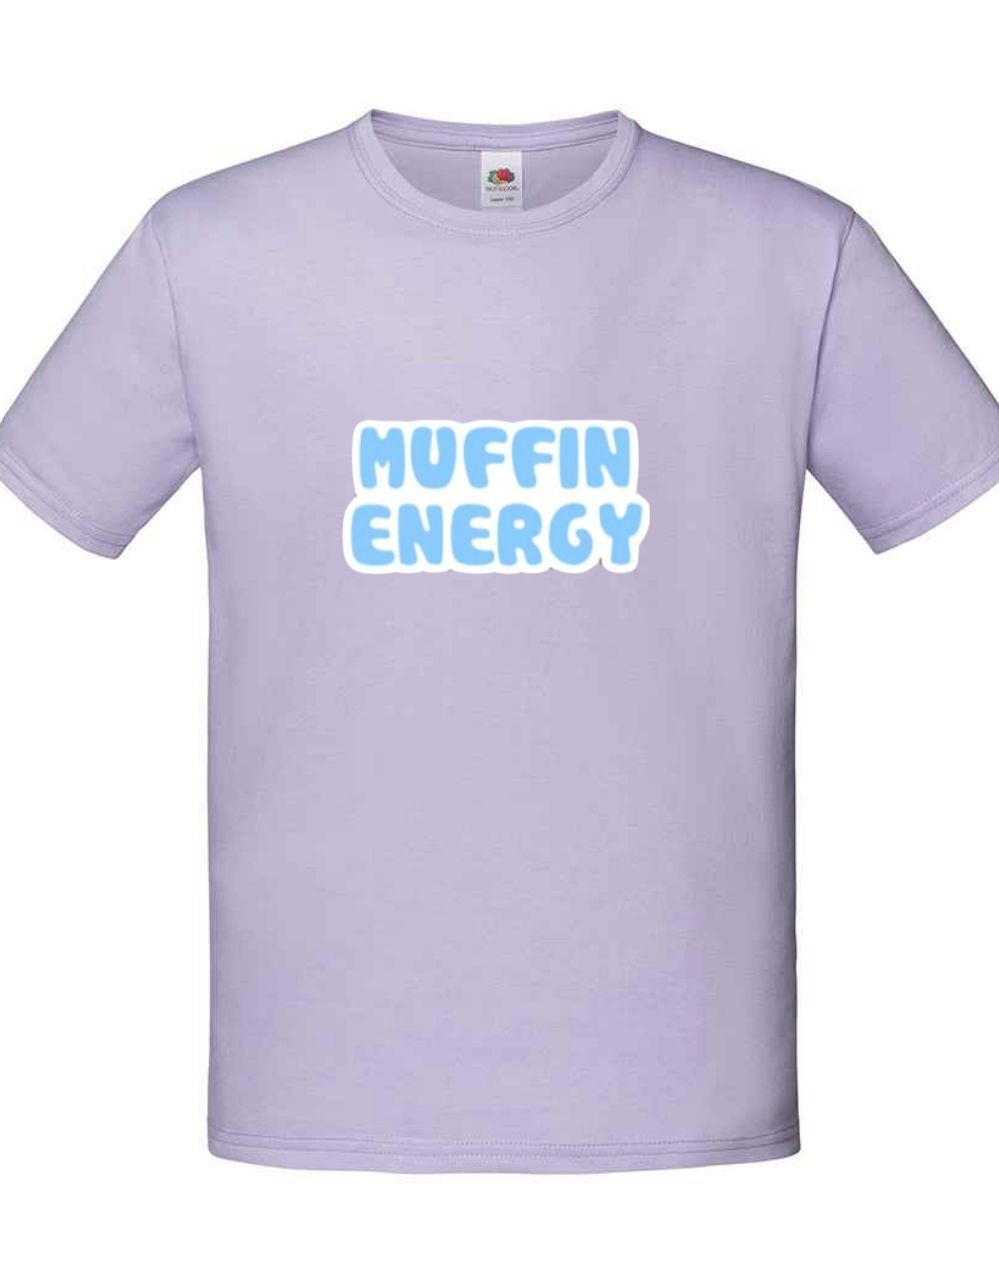 Muffin Energy Kids T-Shirt